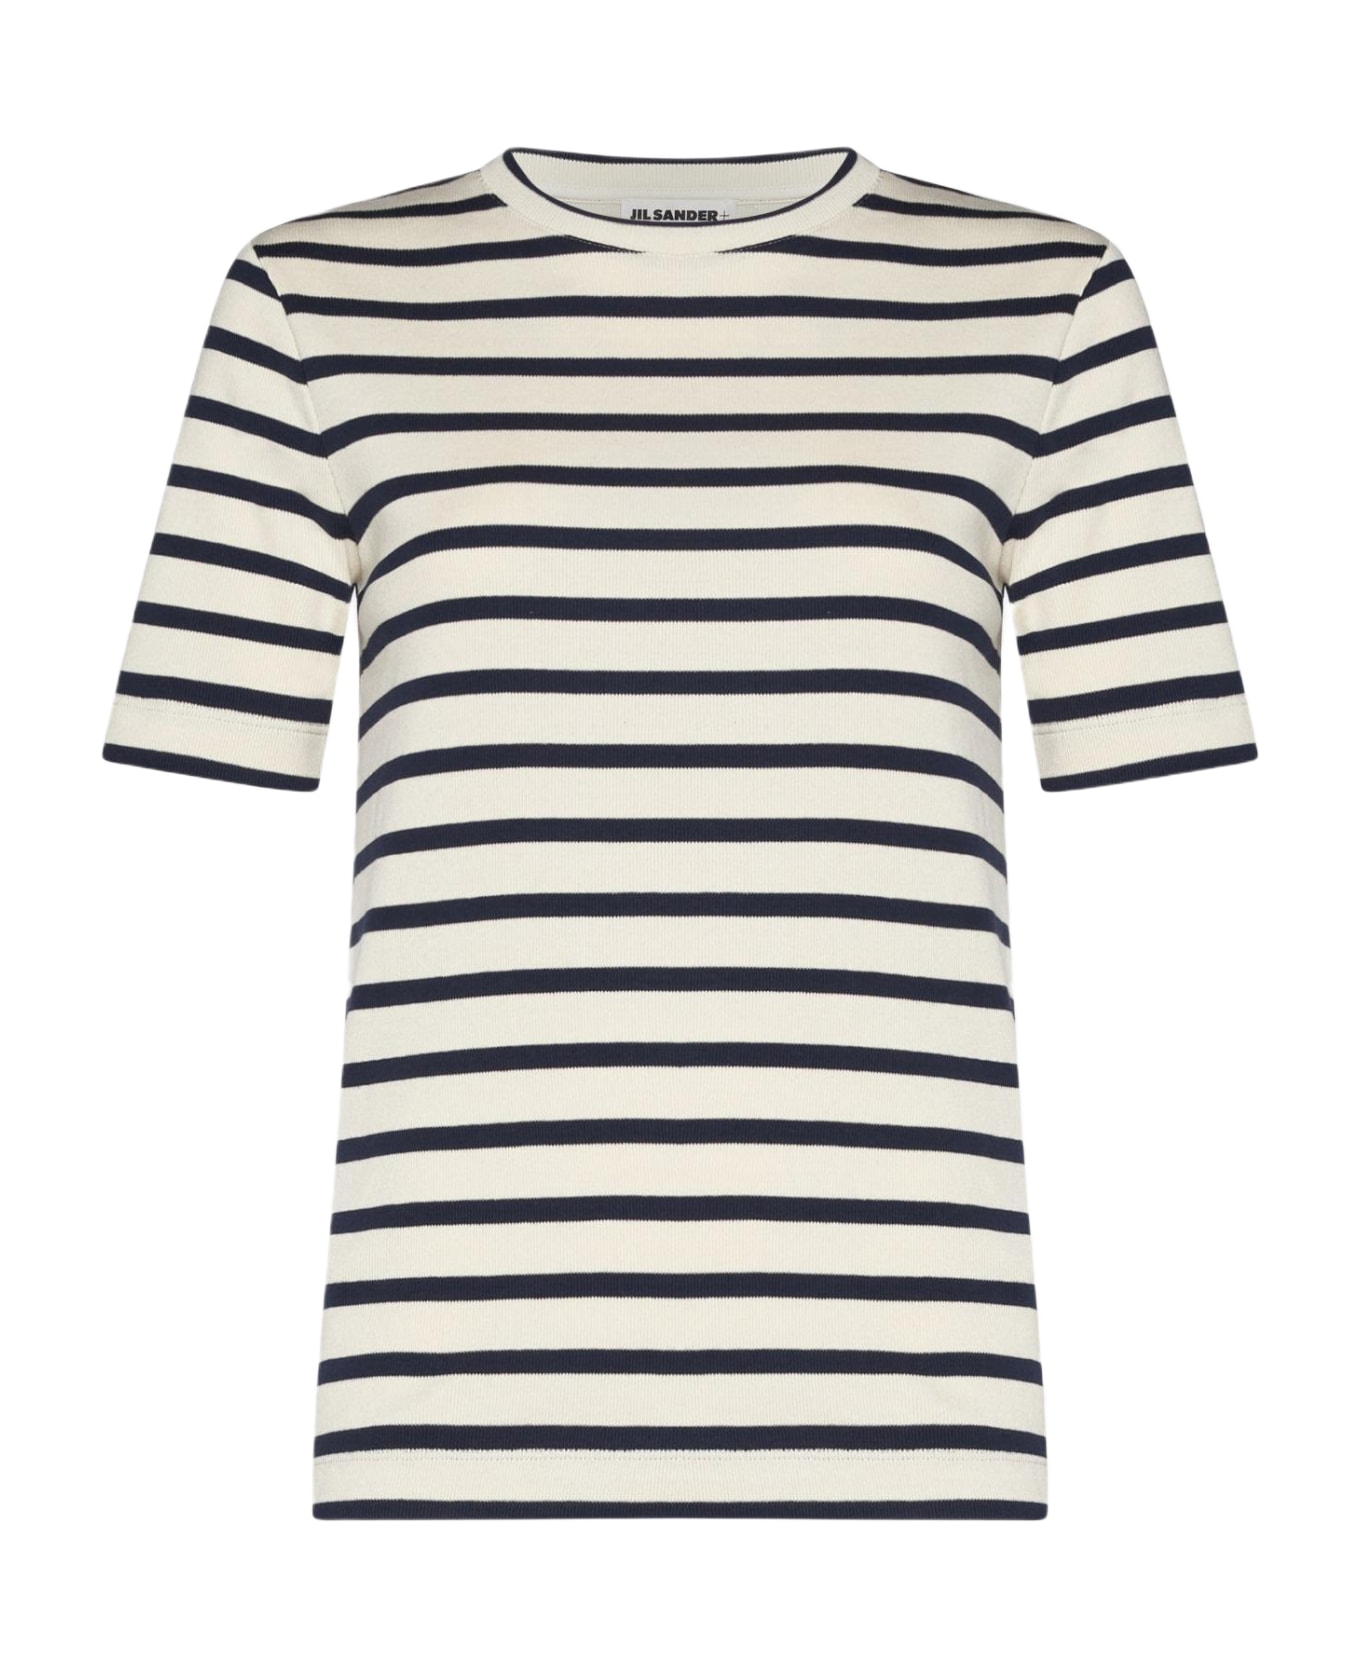 Jil Sander Striped Cotton T-shirt - Bianco e Blu